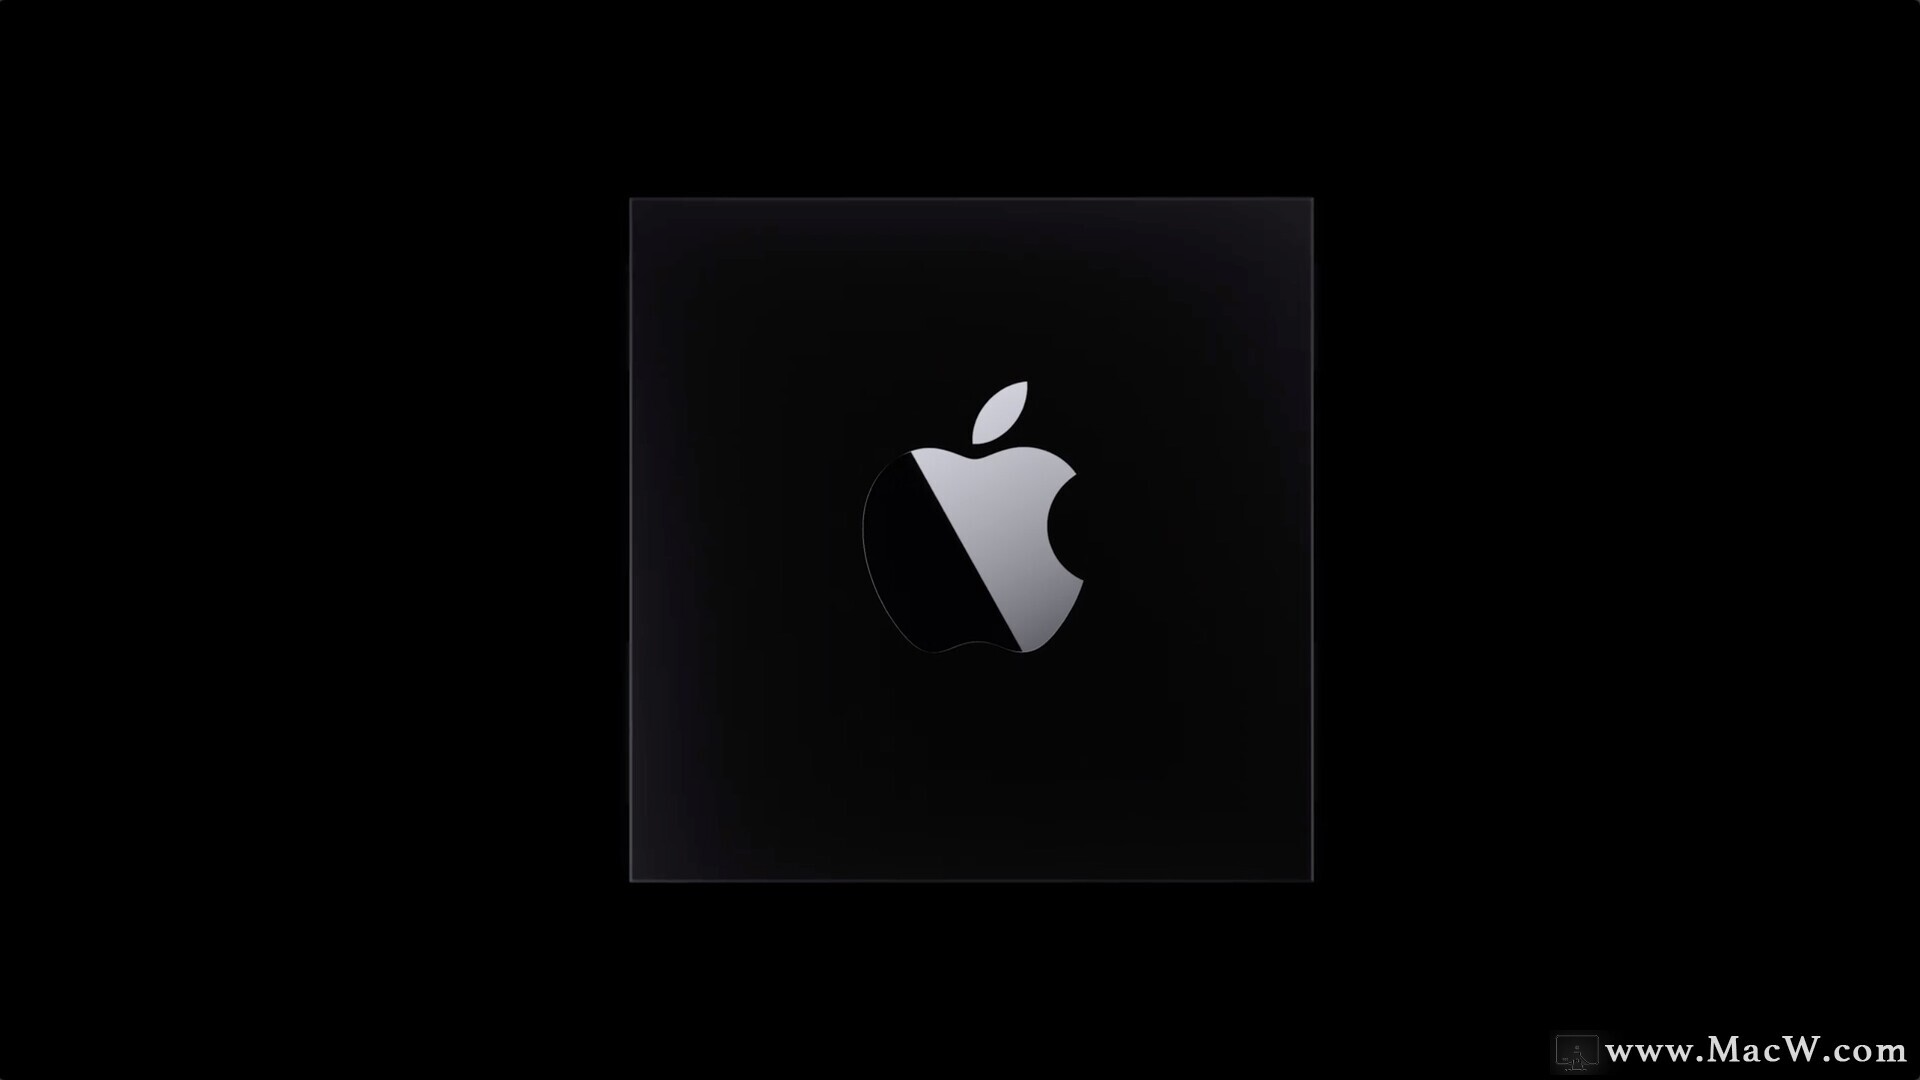 苹果在 WWDC 上宣布放弃 Intel CPU ，将会为 Mac 带来什么变化？众多用户手上的 Mac 将何去何从？